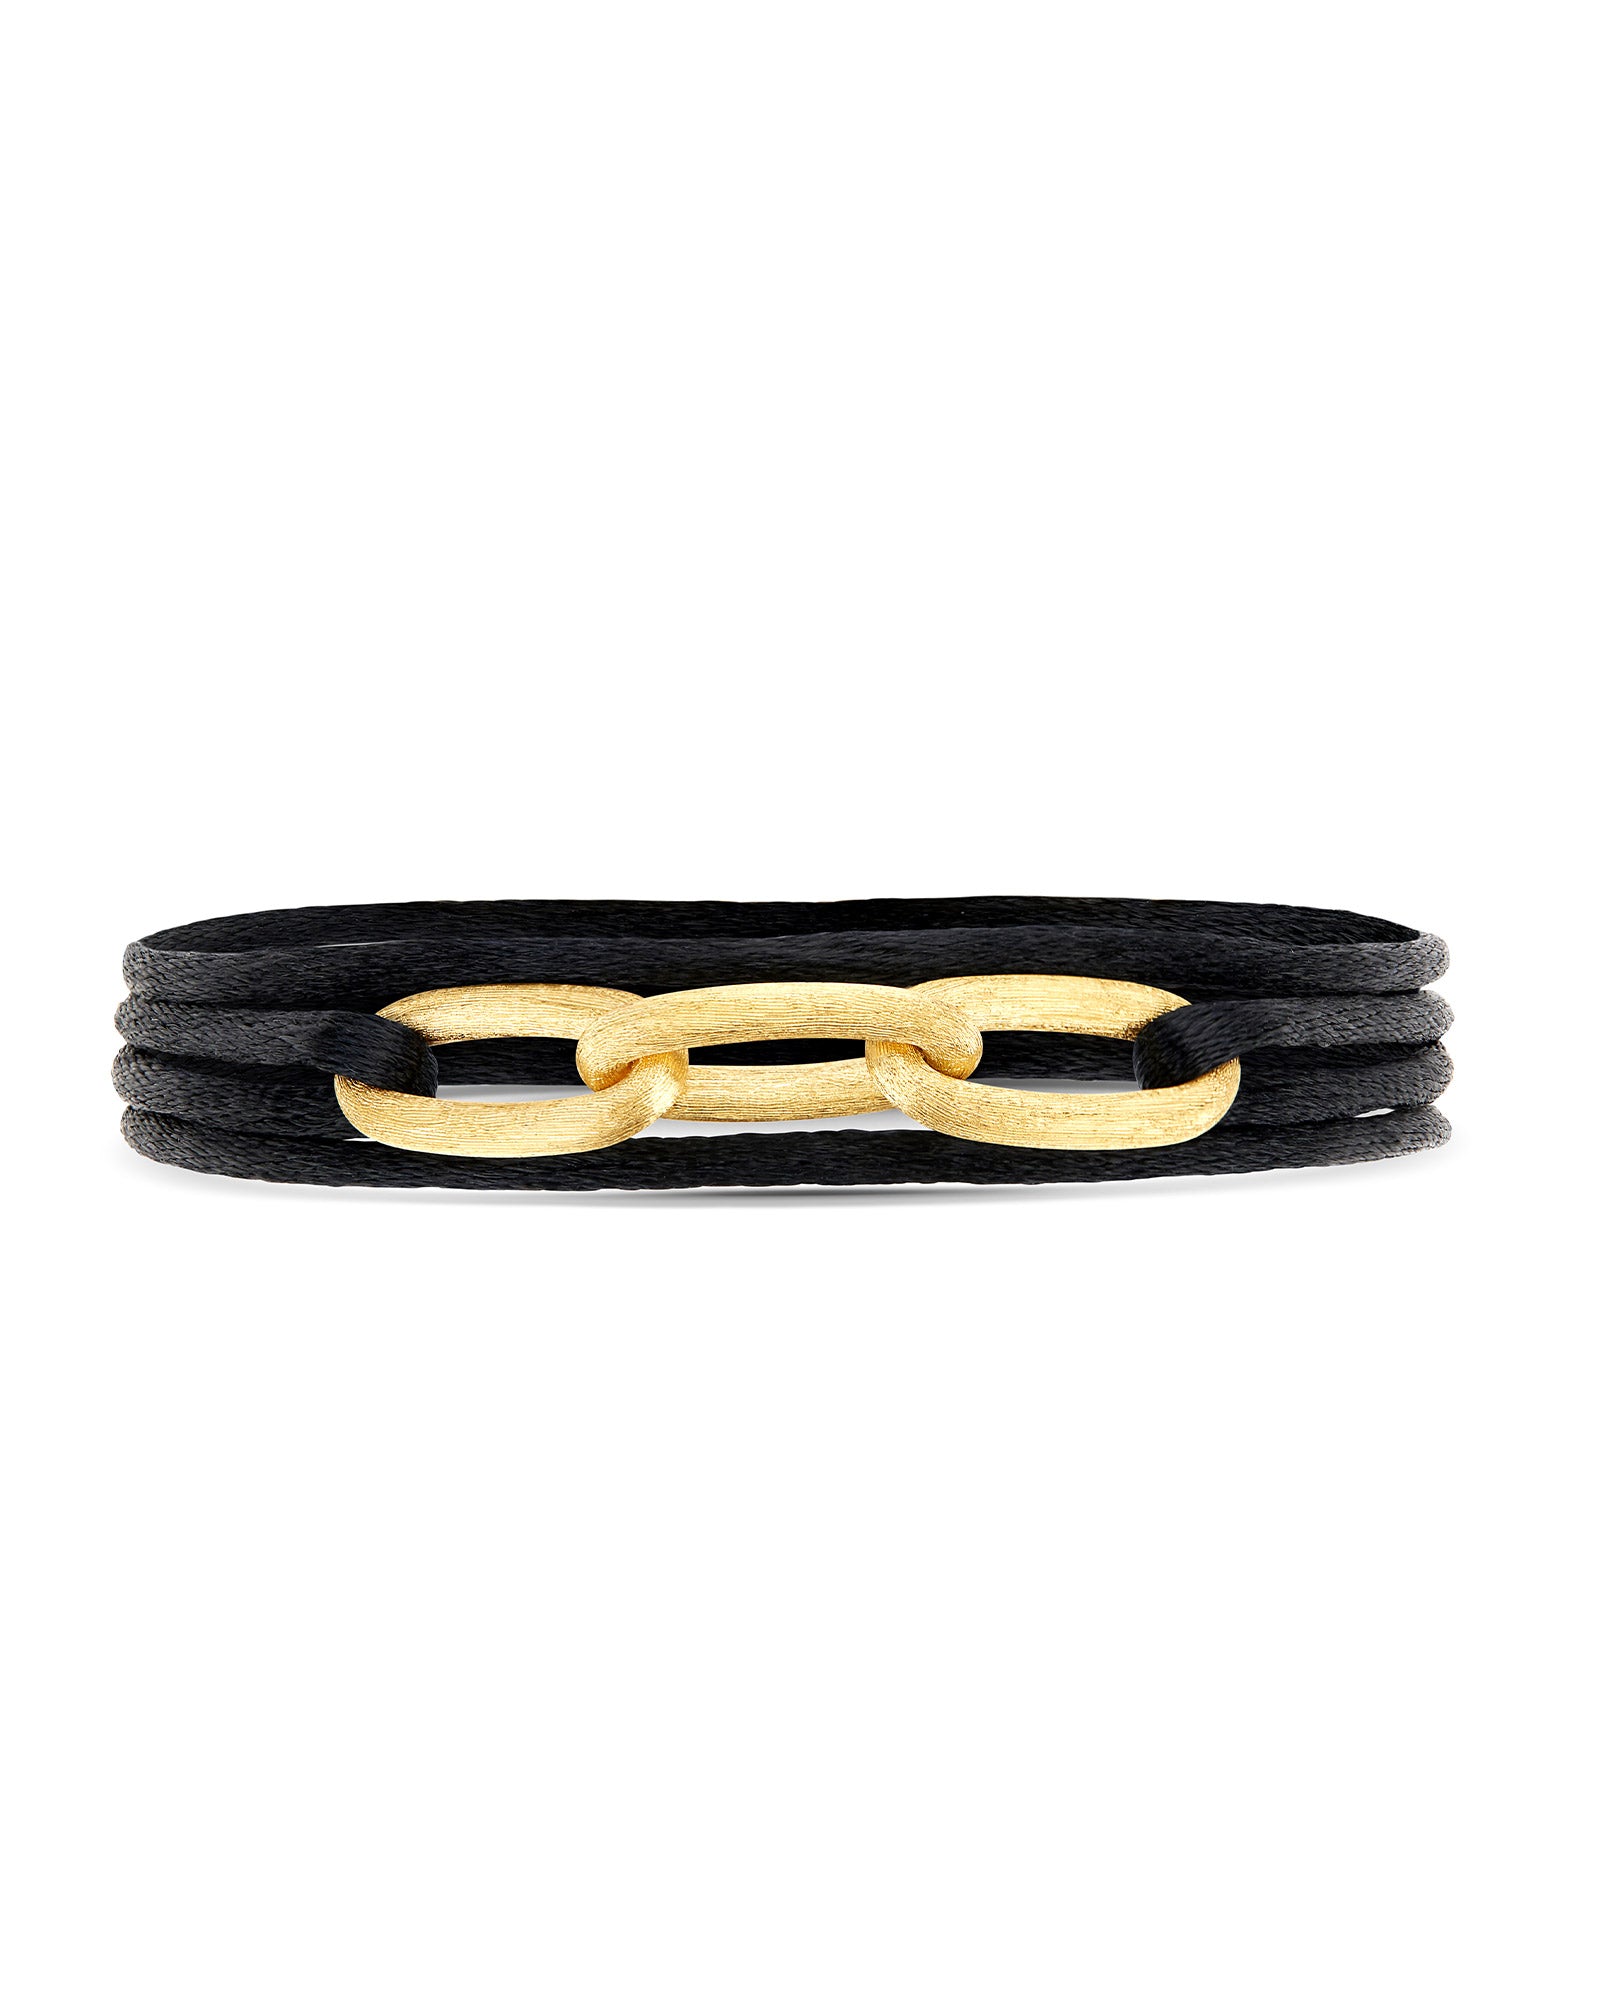 "Libera Soul" gold chain bracelet and choker